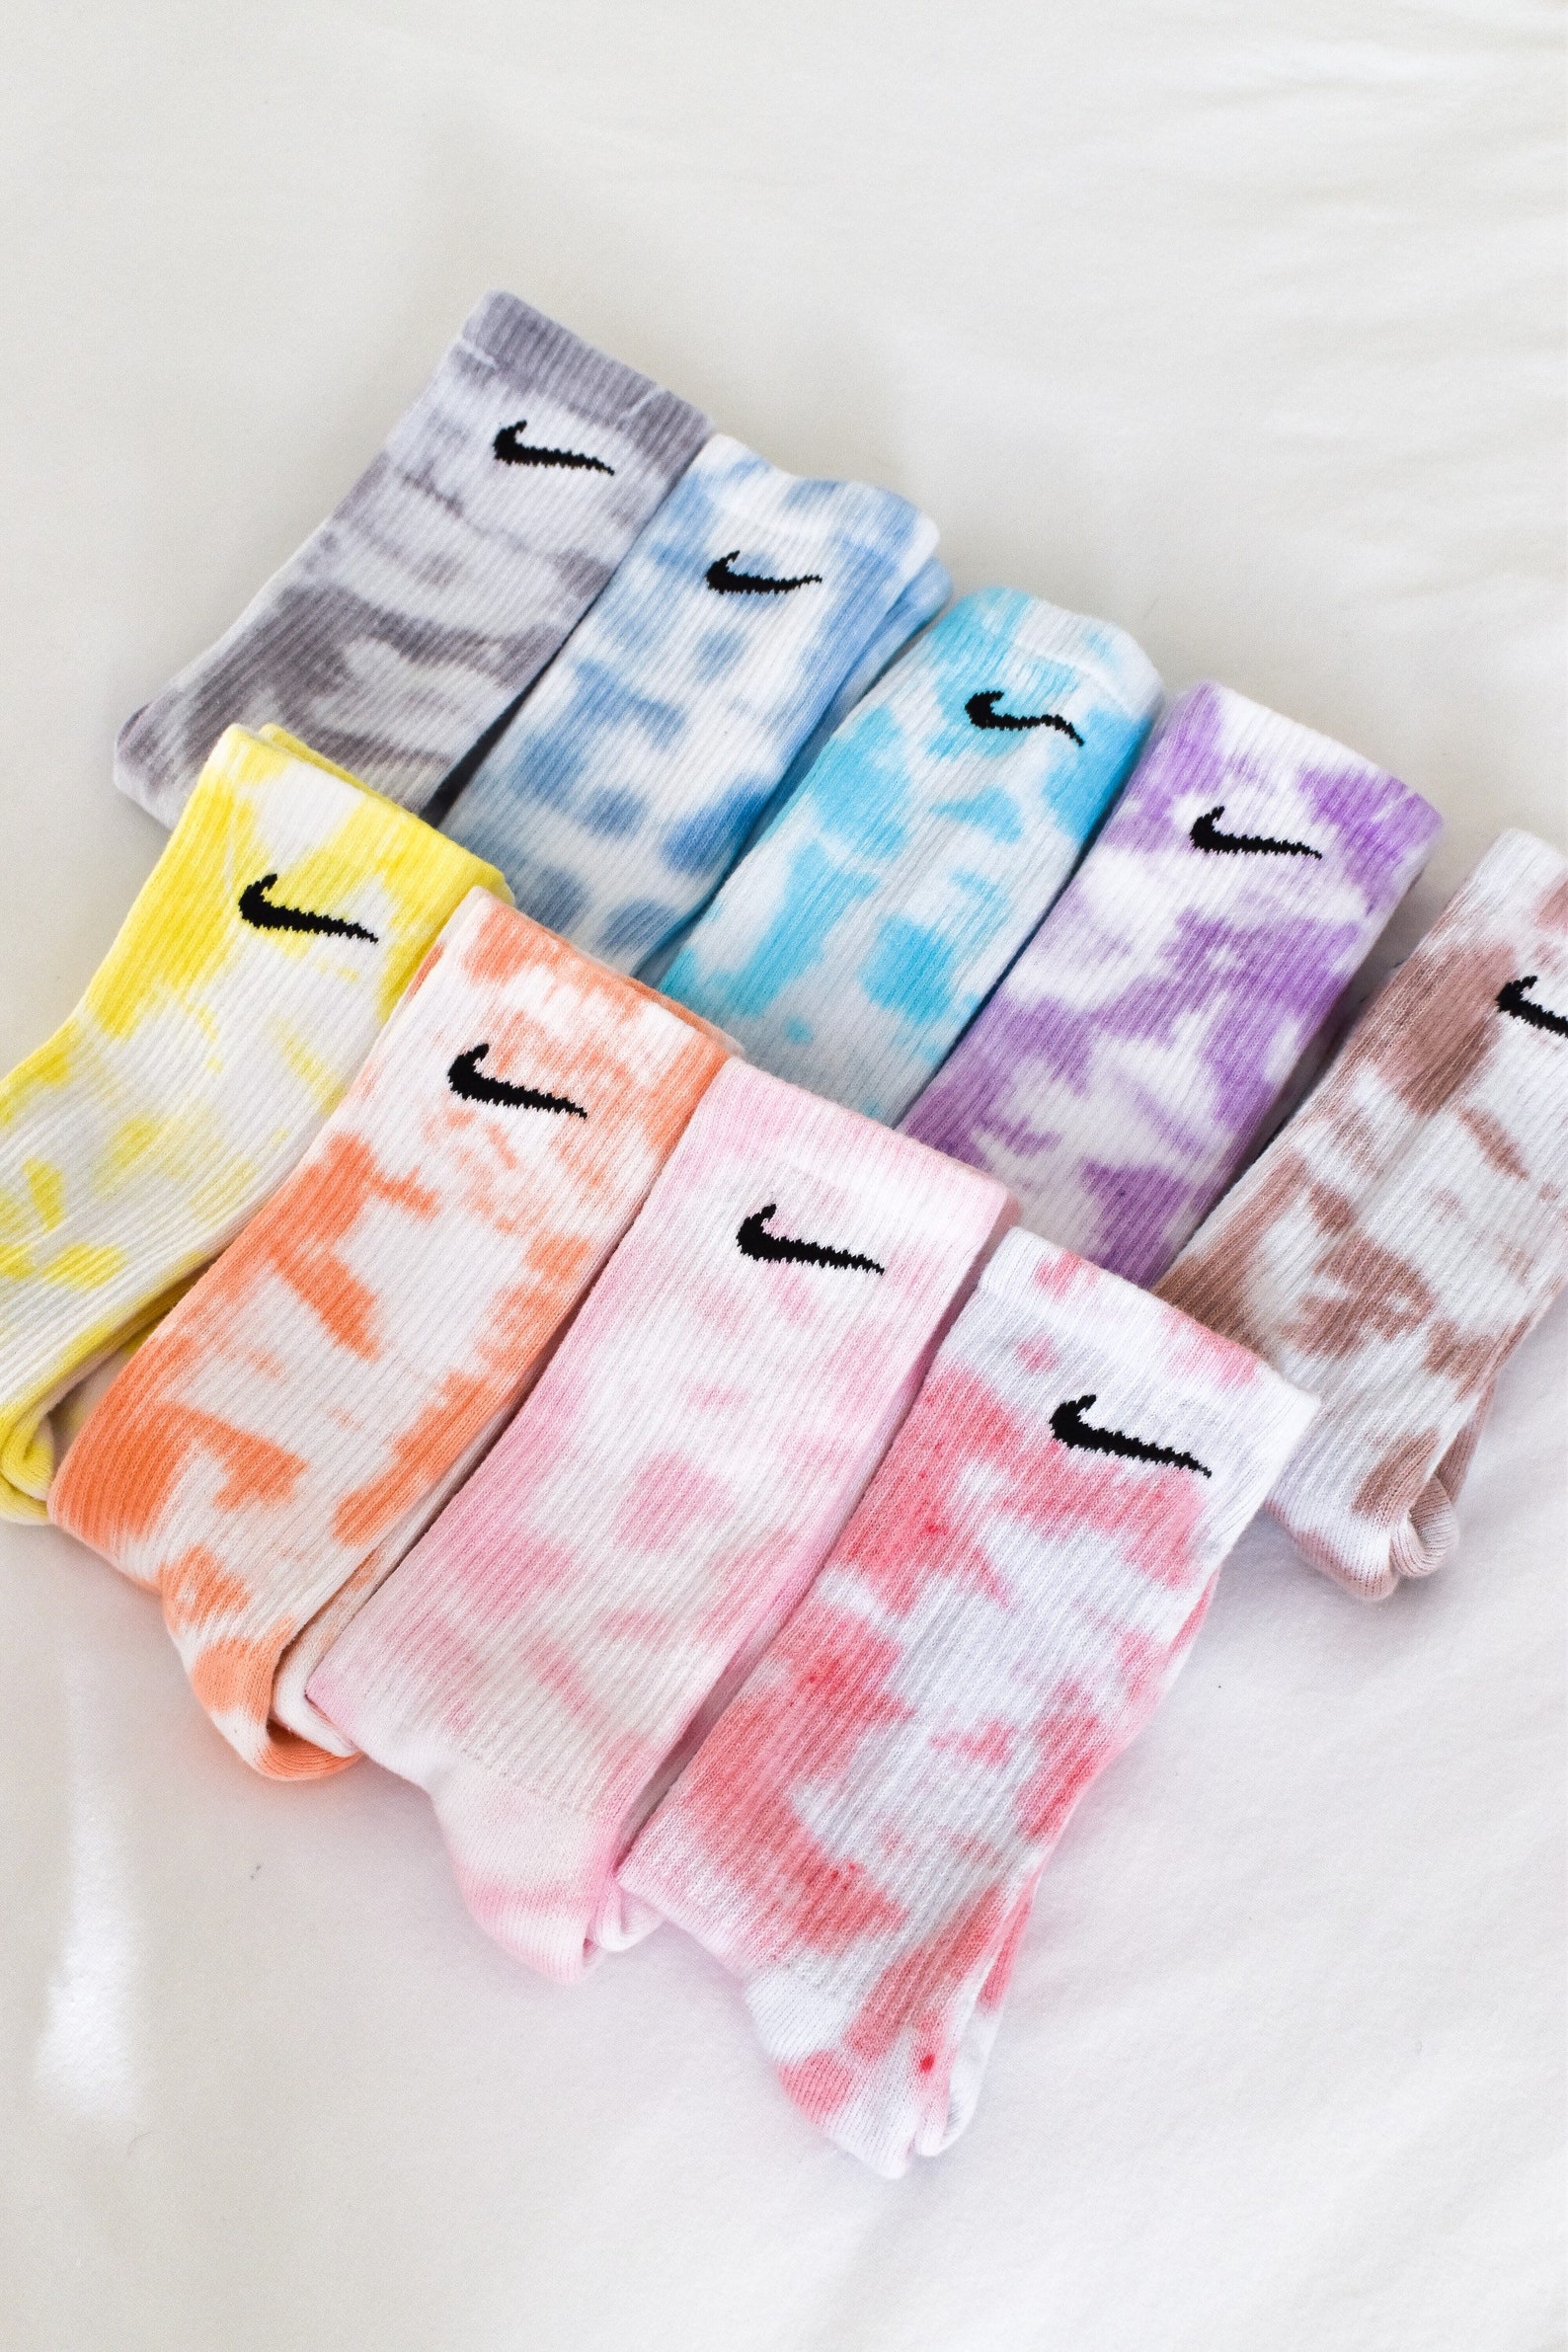 Tie Dye Nike Socks One Pair | Etsy